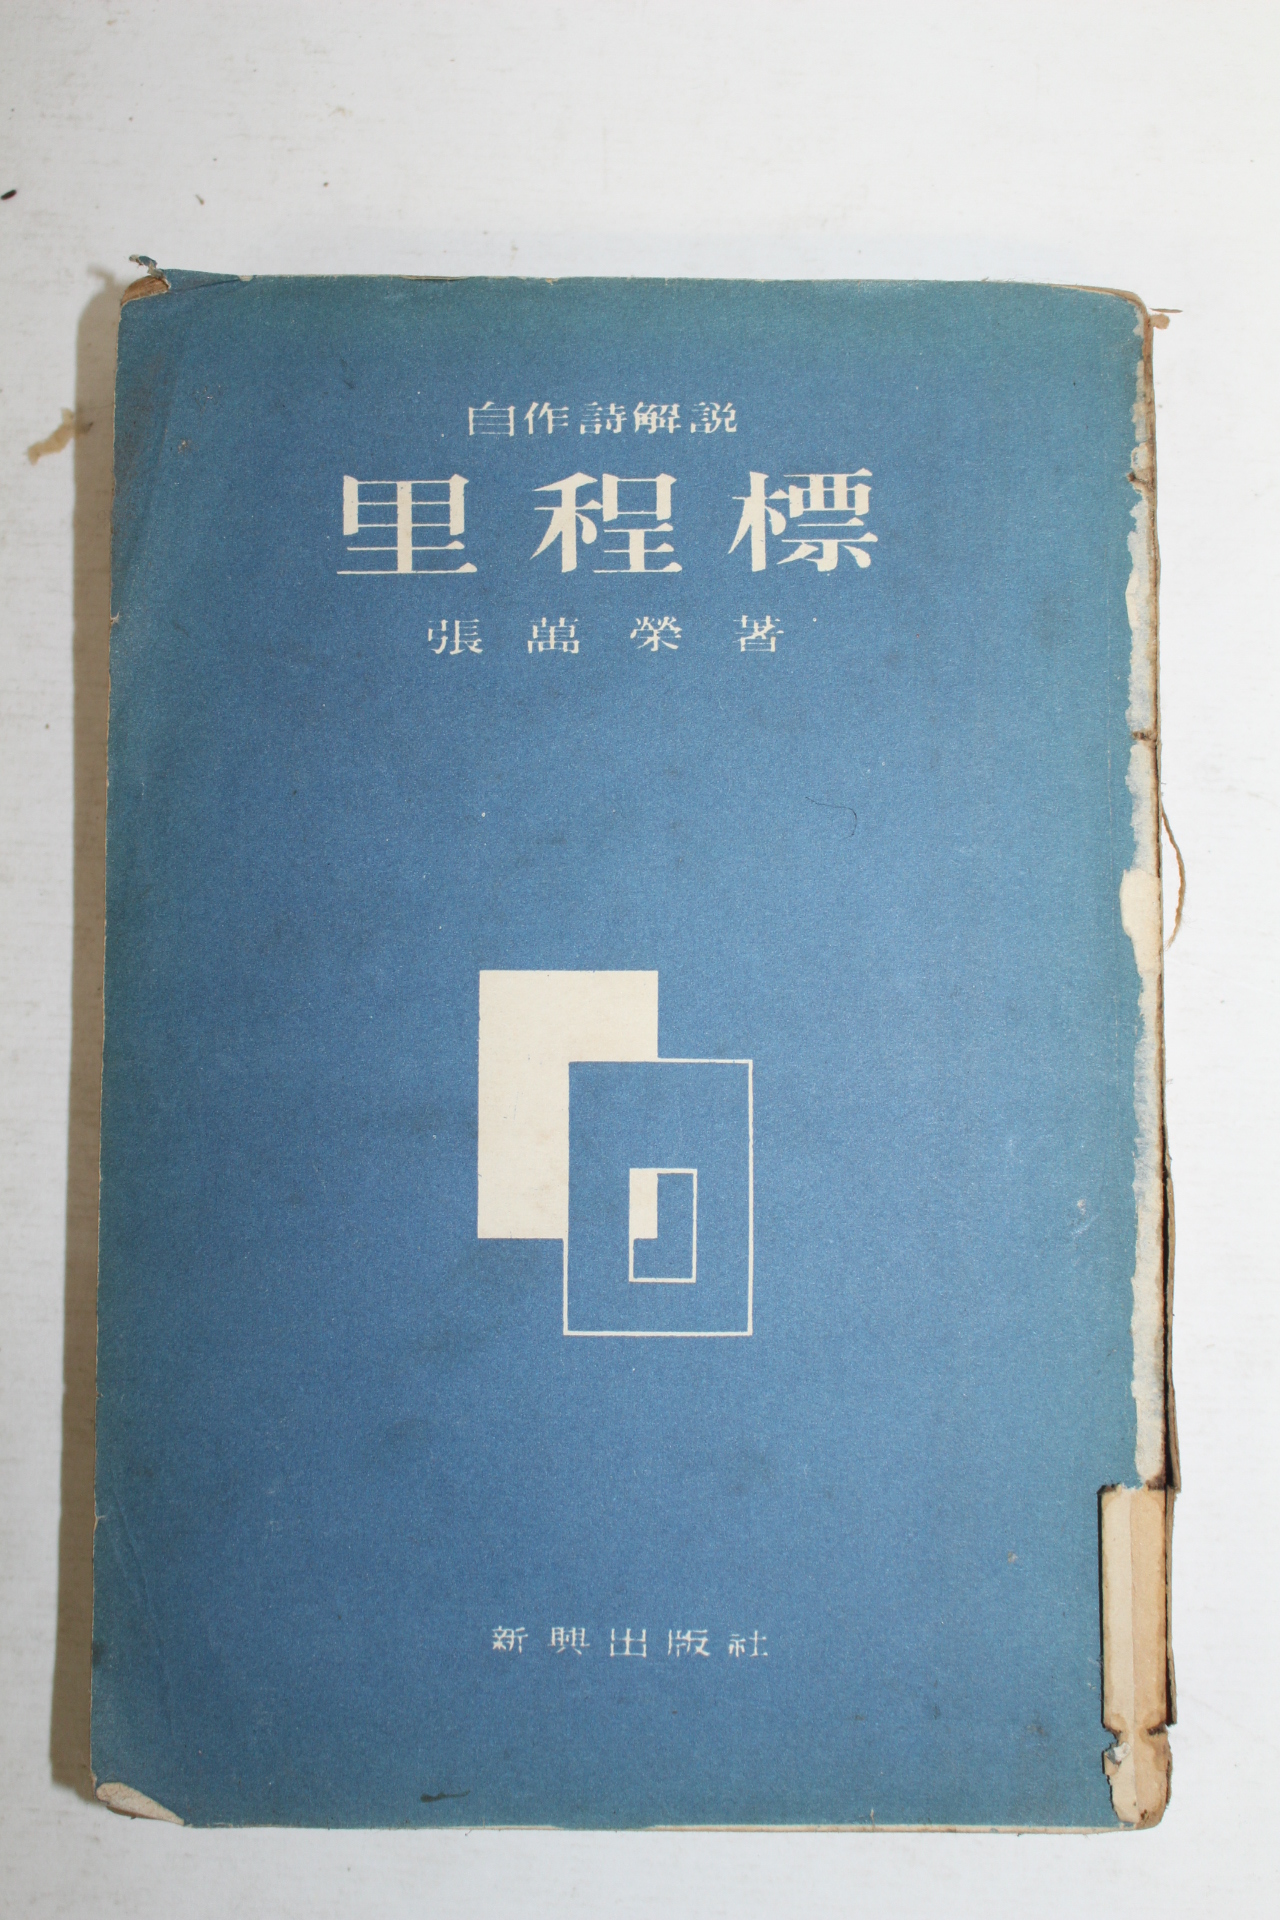 1959년재판 장만영(張萬榮) 이정표(里程標)